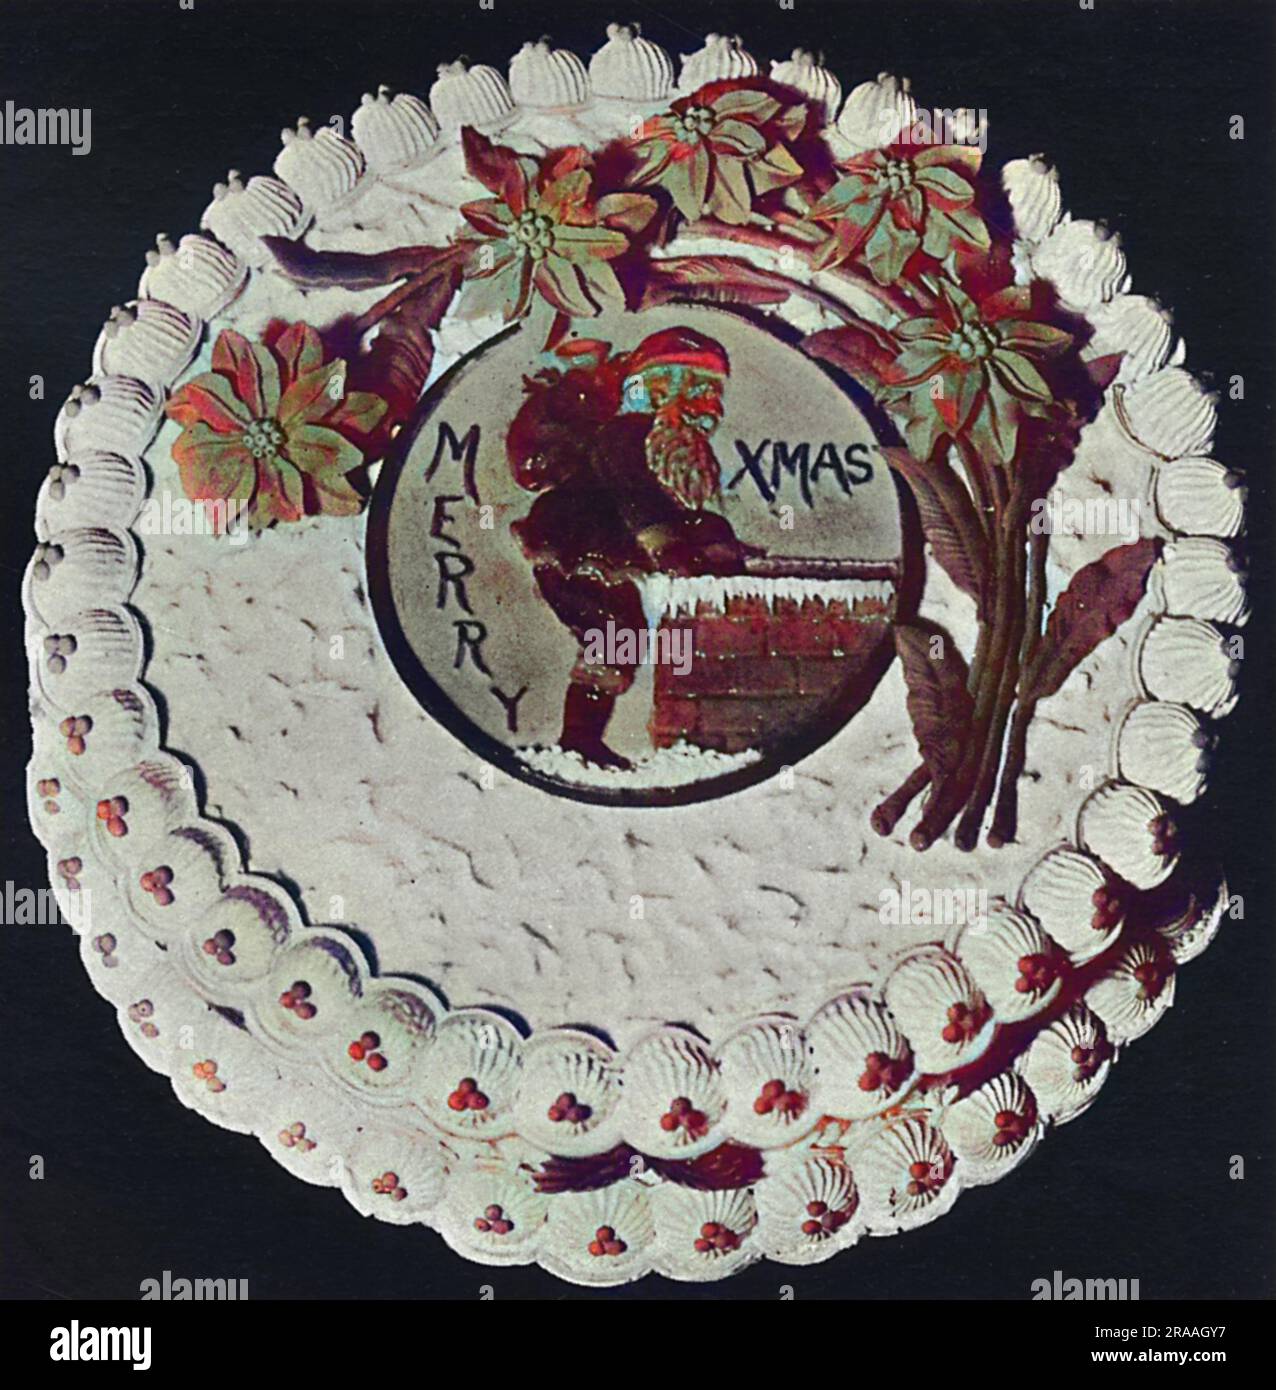 Gâteaux de saison, gâteau de Noël. Plaque du Père Noël en massepain et vaporisateur de Poinsettias Date: 1936 Banque D'Images